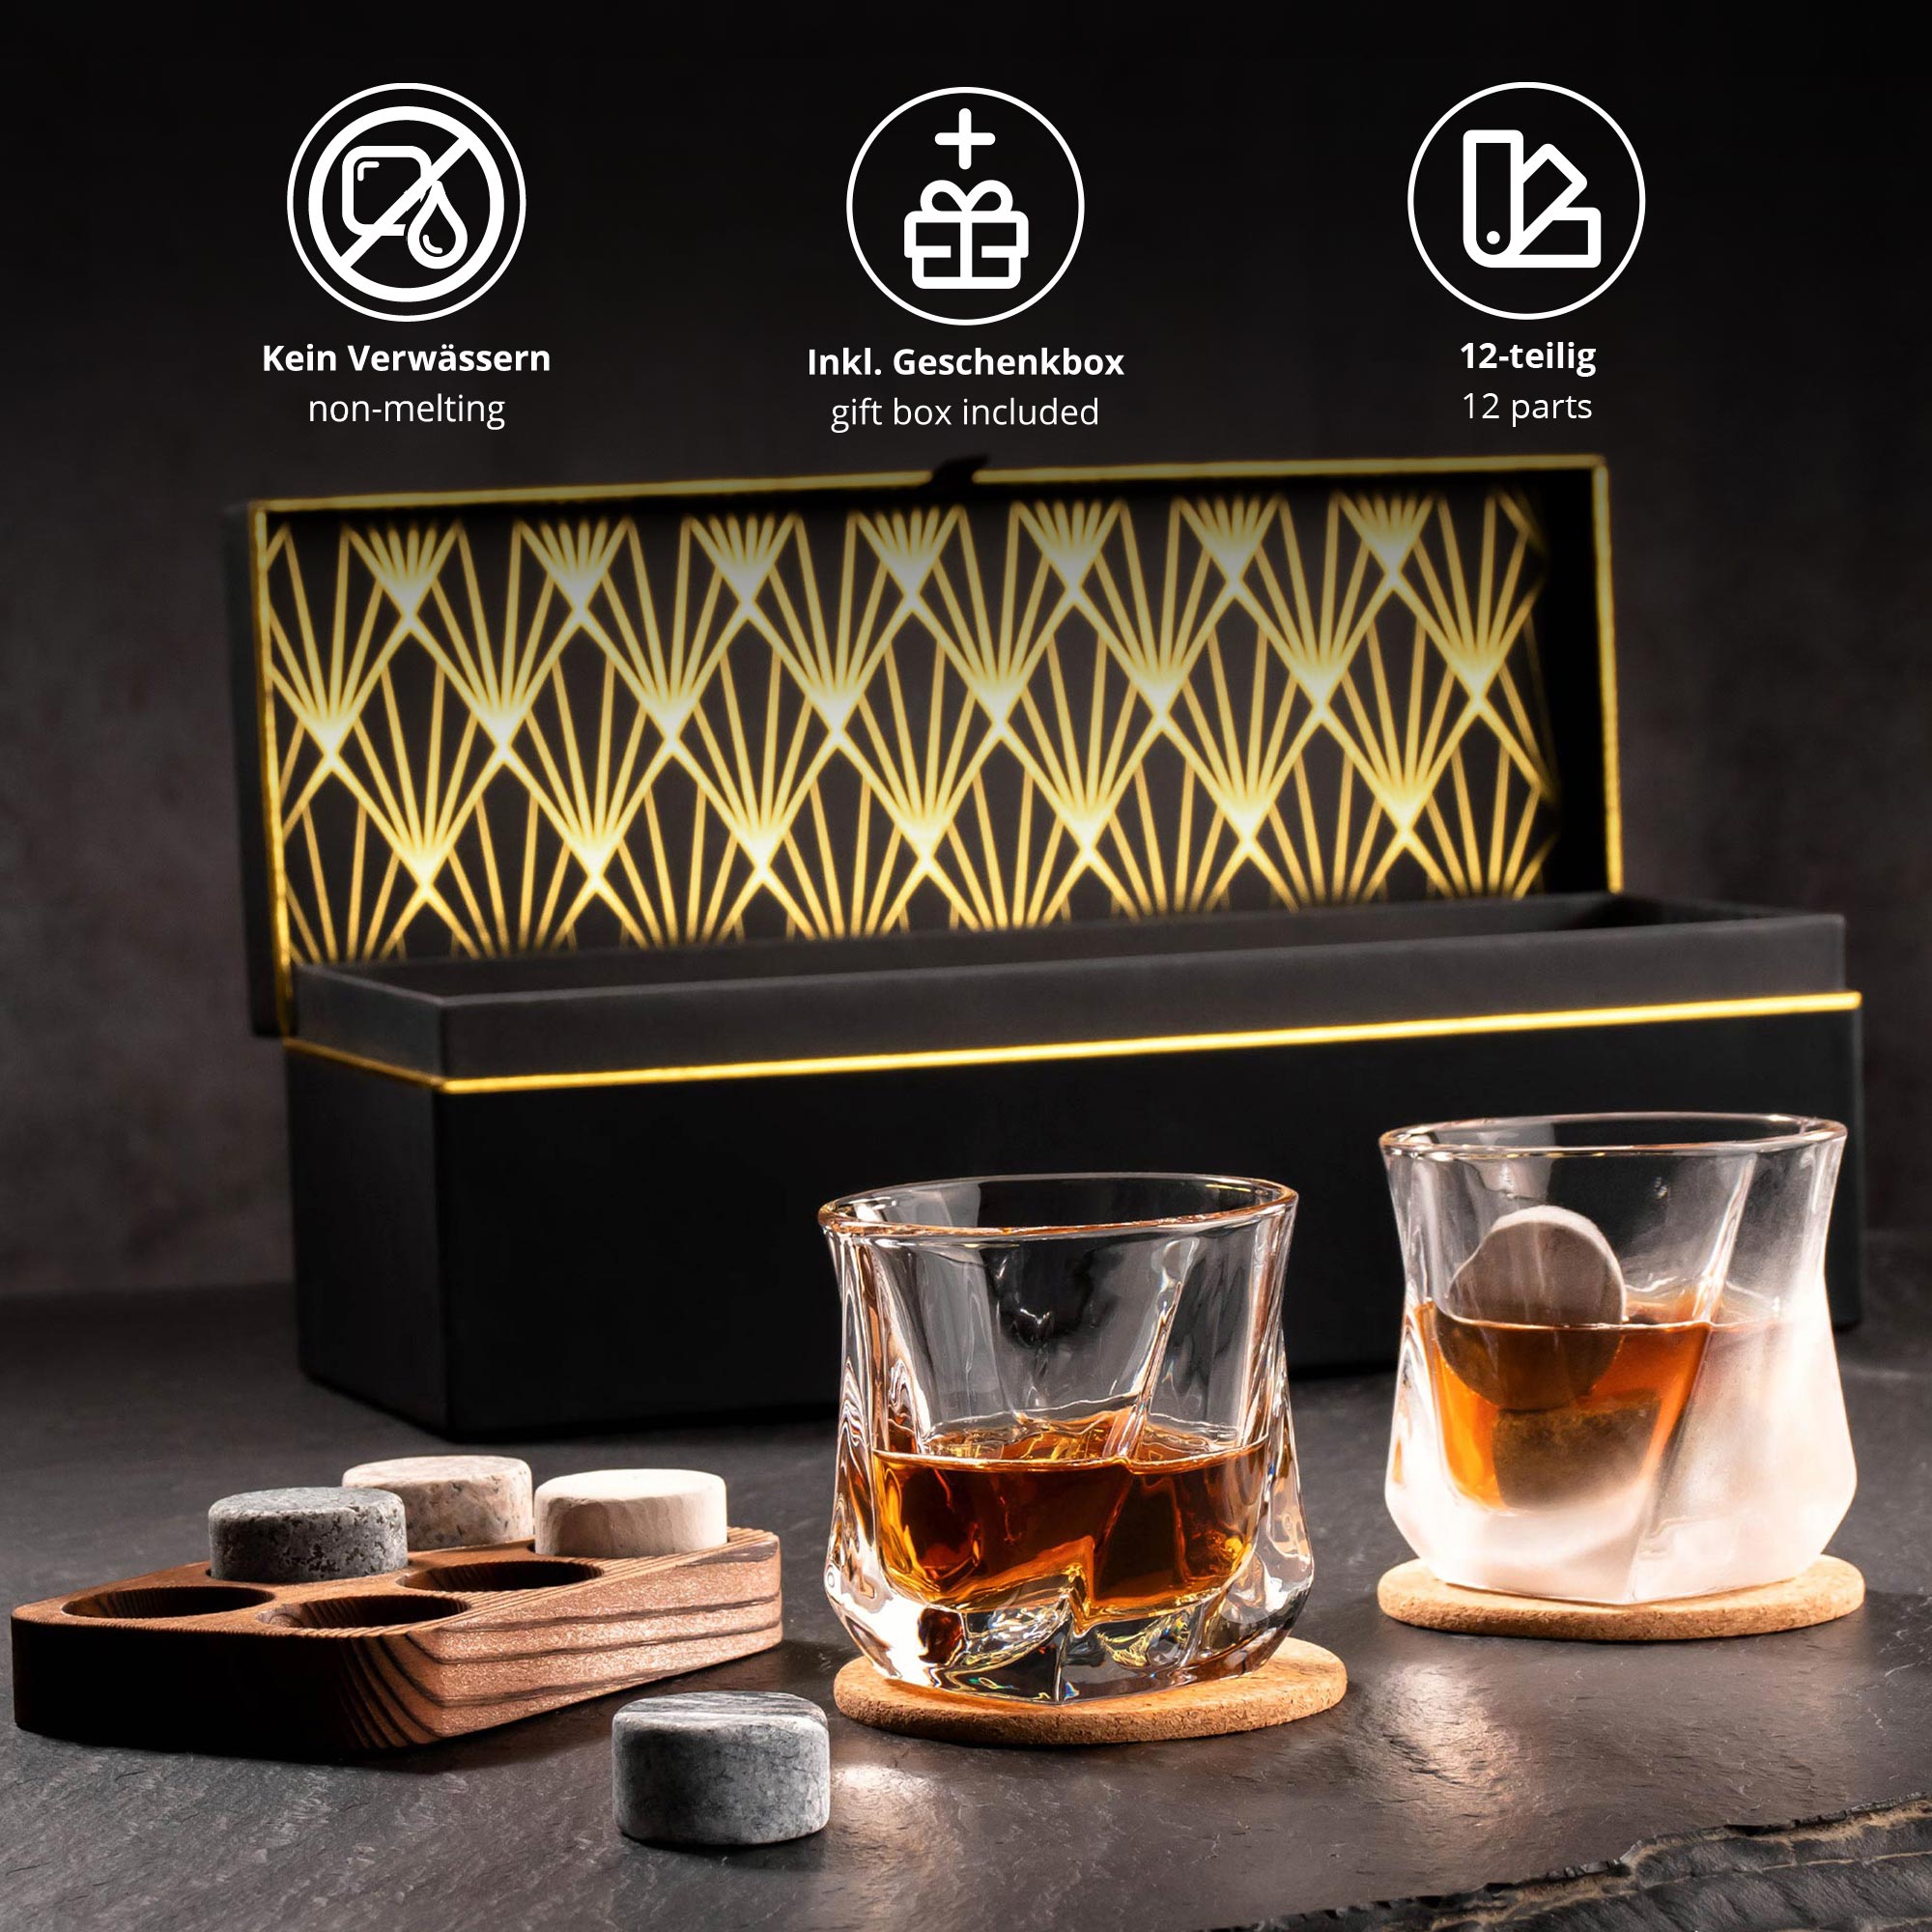 Whisky Geschenkset Deluxe personalisiert zum 60. Geburtstag